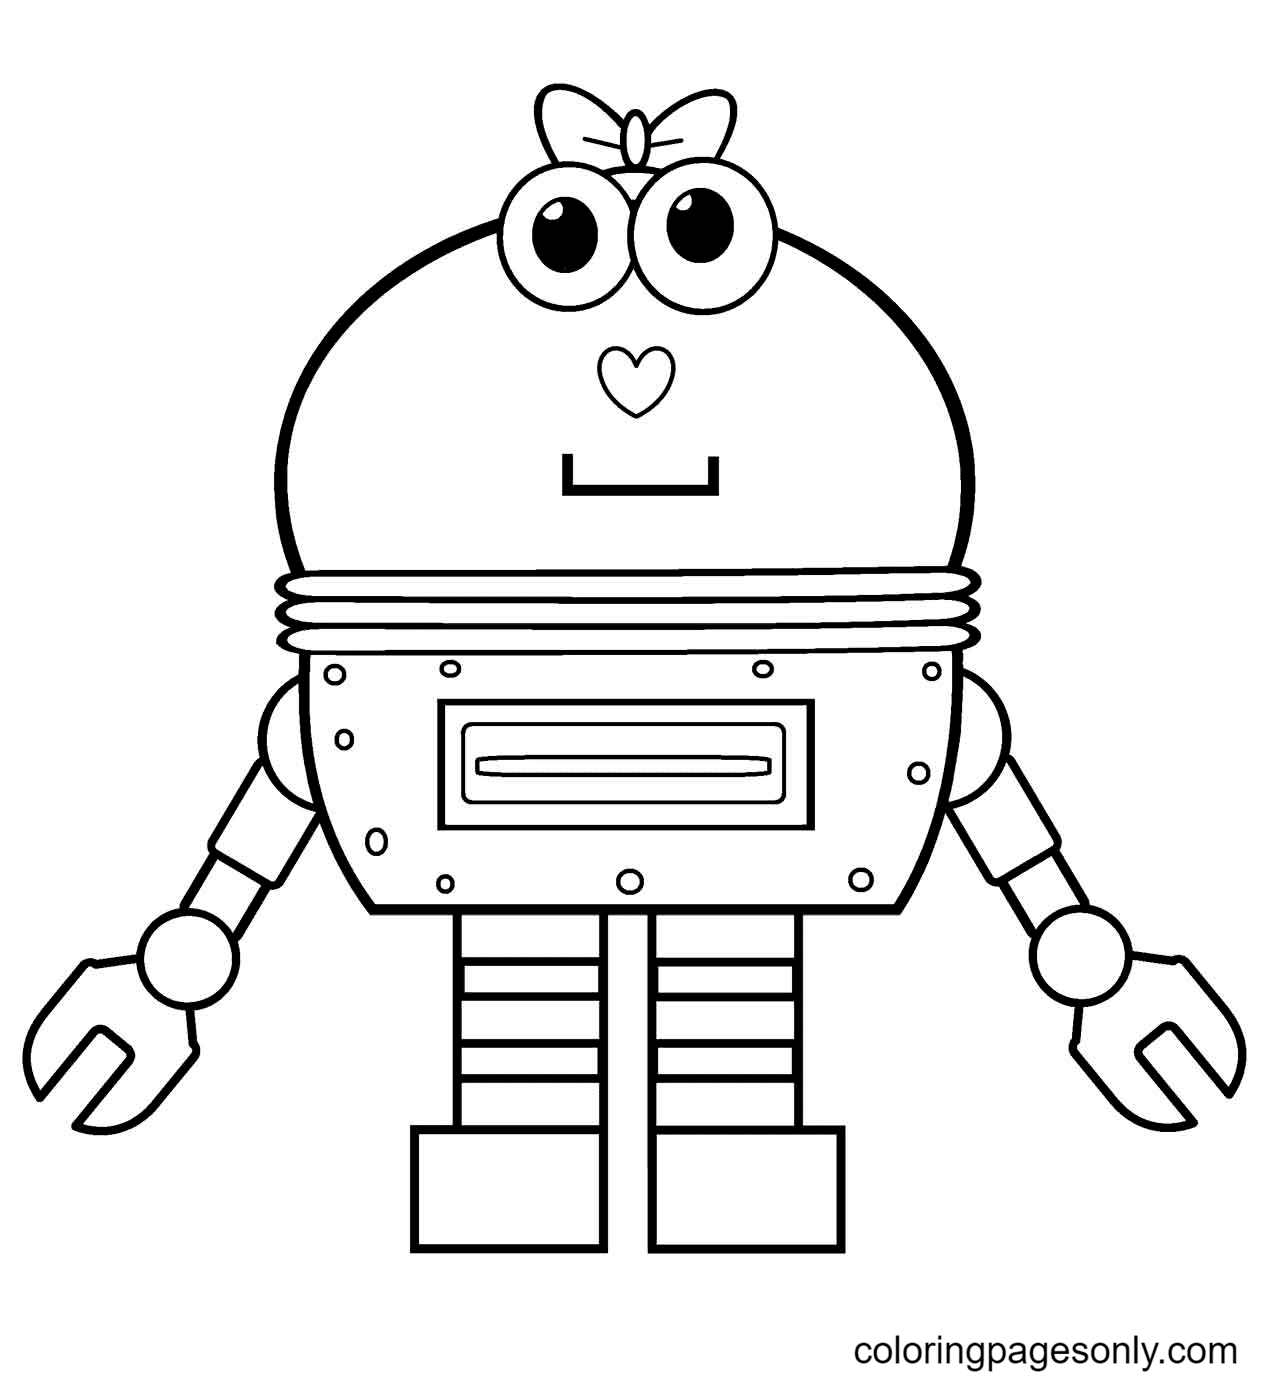 Раскраска робота 3. Раскраски. Роботы. Тобот раскраска для детей. Робот раскраска для детей. Hj,jnраскраска для детей.